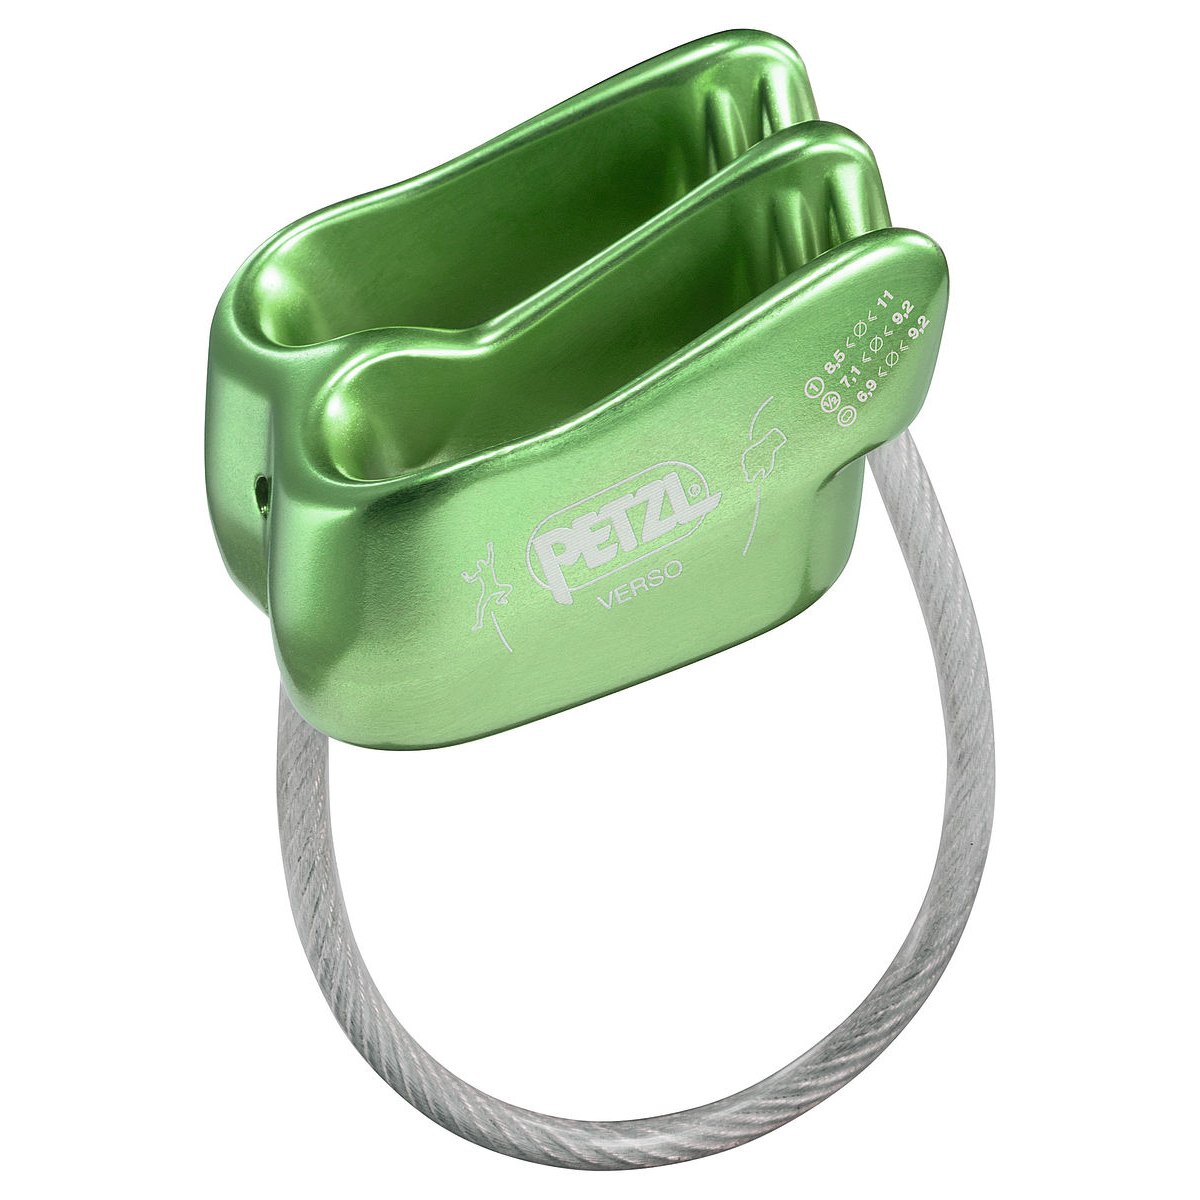 Produktbild von Petzl Verso Sicherungsgerät - grün